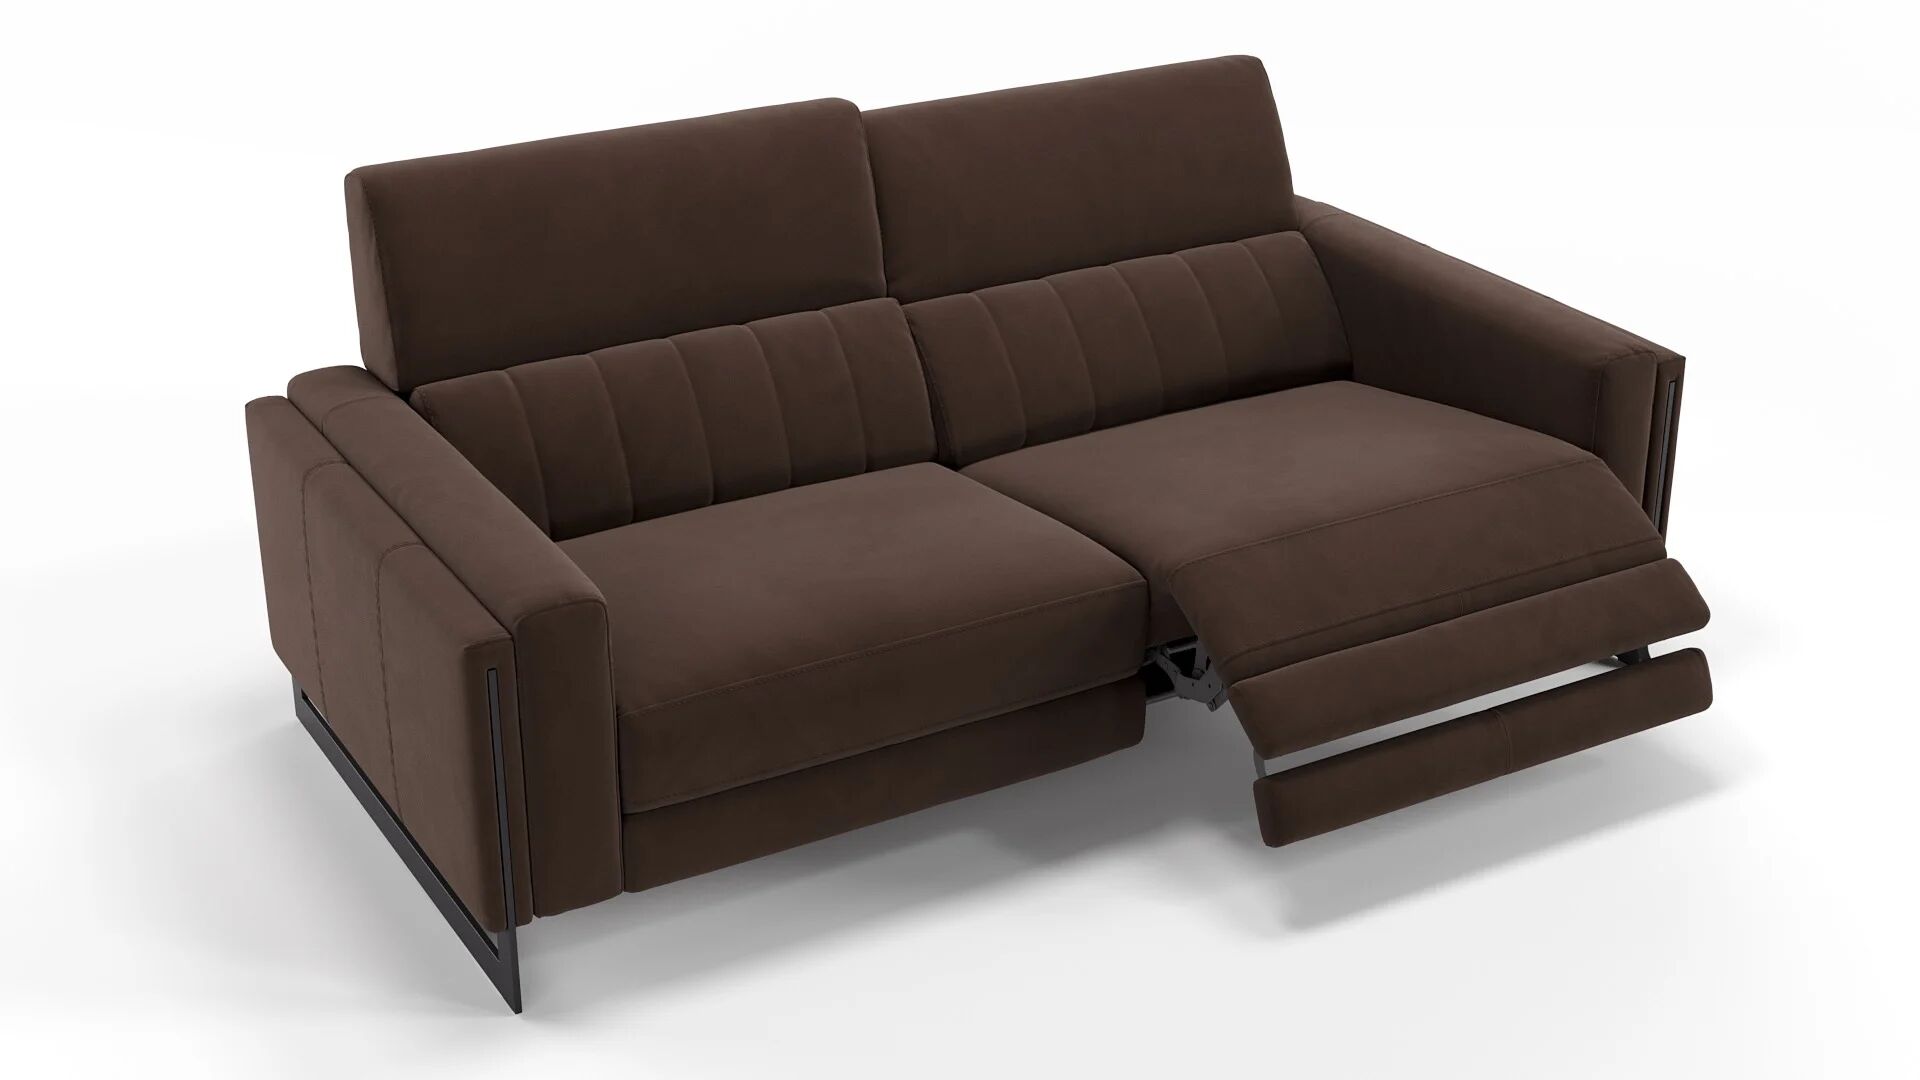 sofanella Stoff Couchgarnitur MARA 2-Sitzer Couch 176x101x89cm braun